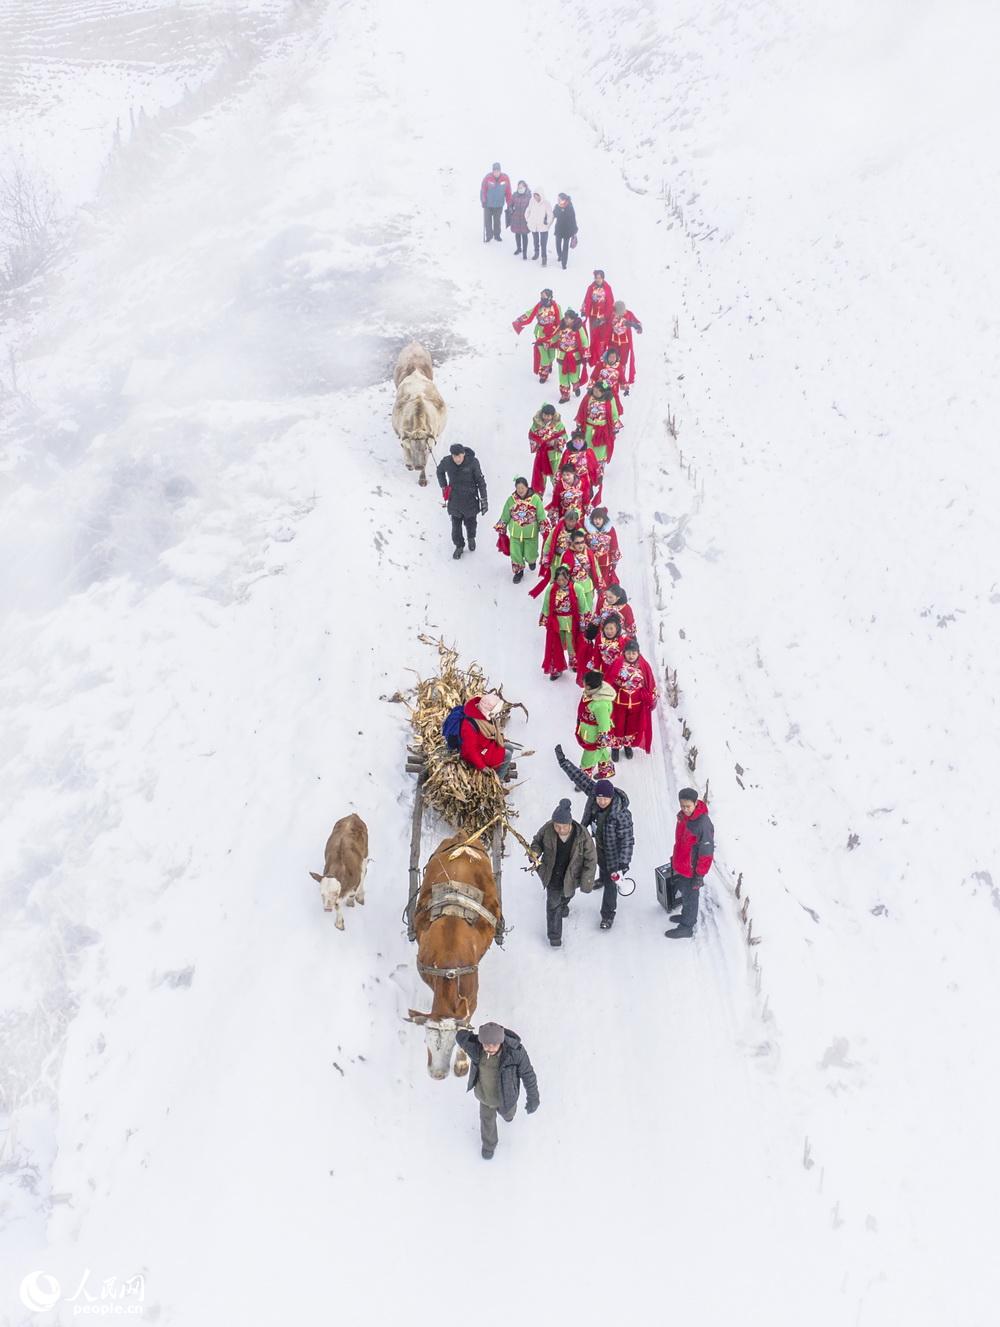 為了迎接元旦、春節，村民踏雪彩排秧歌。朱毓峰2017年12月24日拍攝於吉林省樺甸市樺甸鄉。